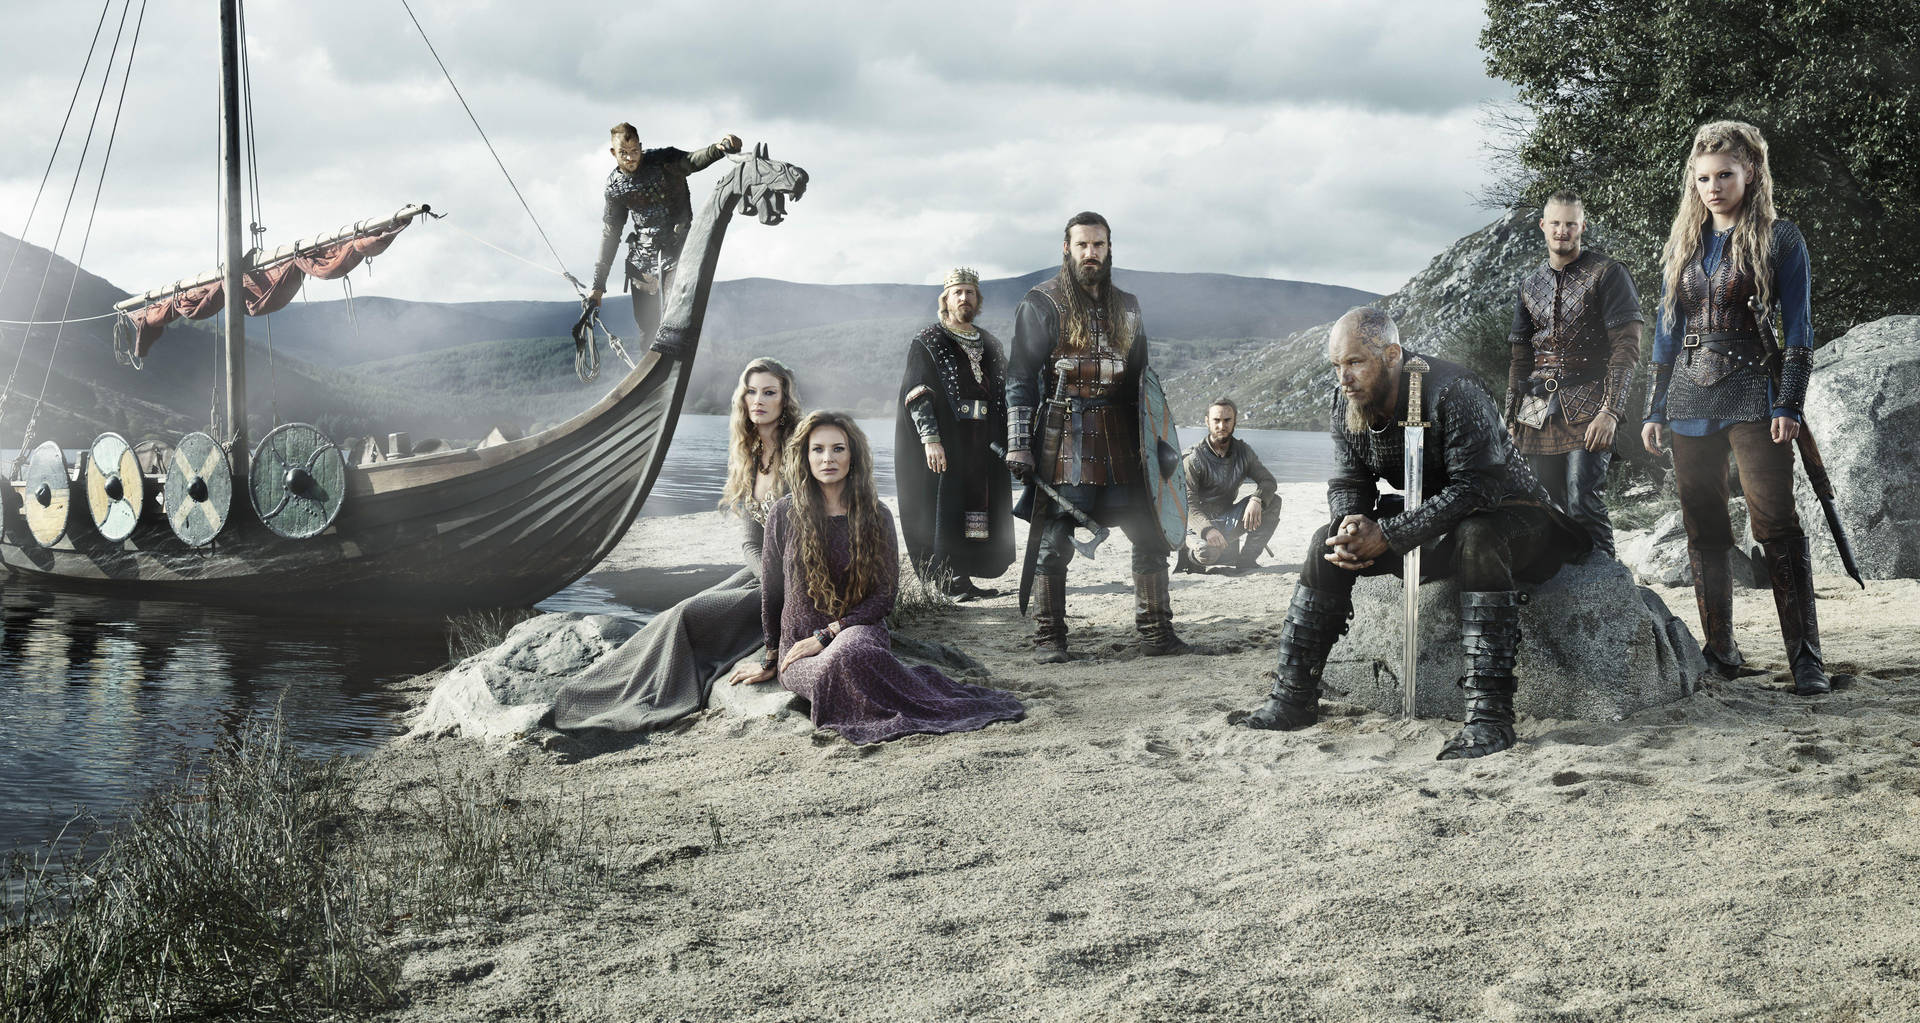 Personajesde Vikingos Con Barco Vikingo. Fondo de pantalla